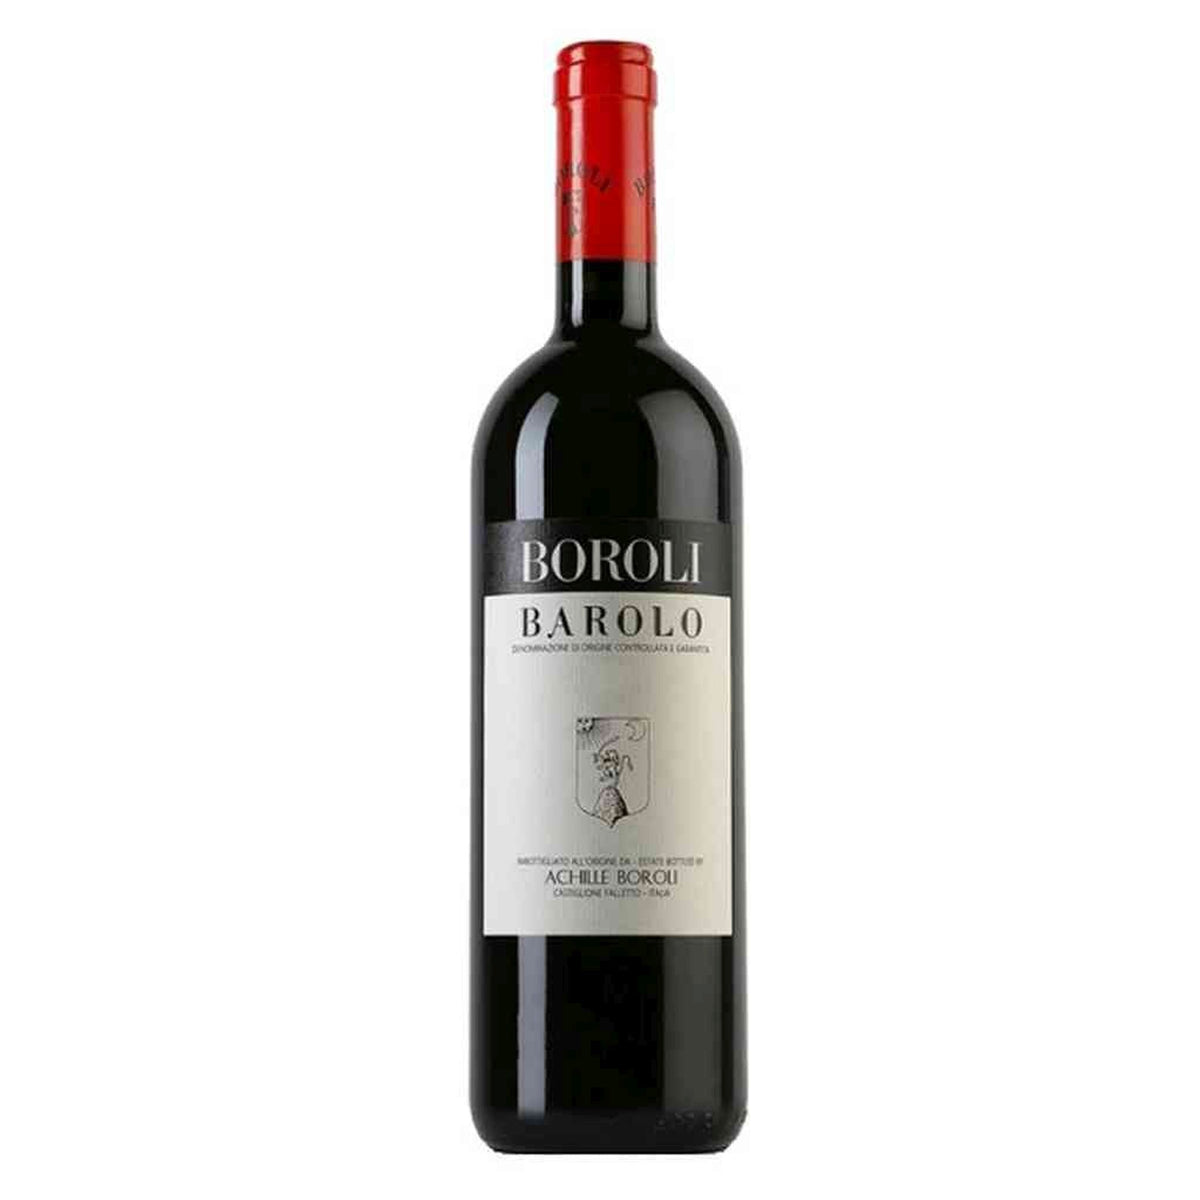 Boroli-Rotwein-Nebbiolo-2012 Barolo Classico Magnum-WINECOM